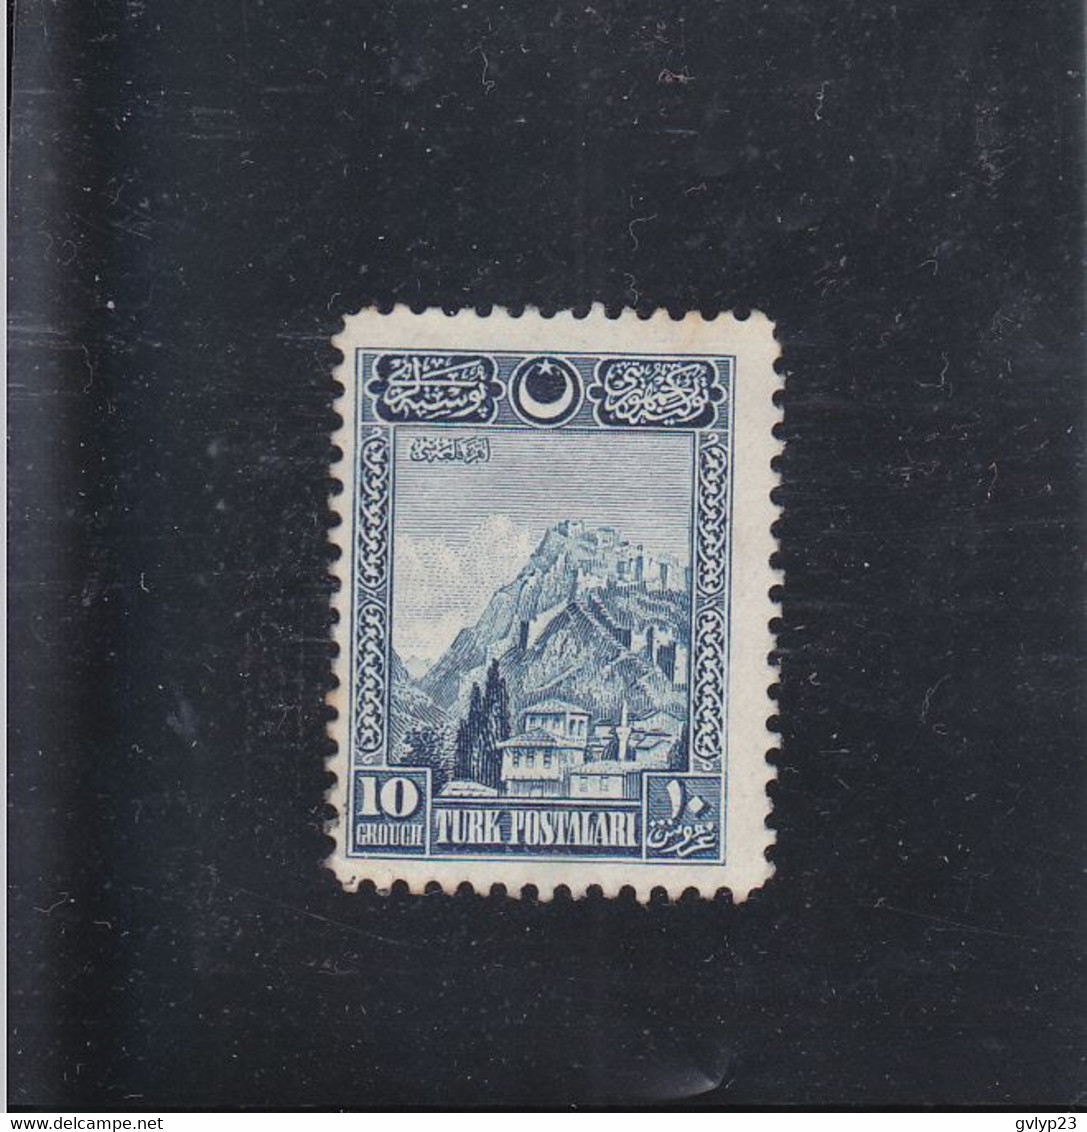 CITADELLE D'ANKARA / NEUF SANS GOMME / 10 Gr. BLEU / N° 703 YVERT ET TELLIER 1926 - Unused Stamps